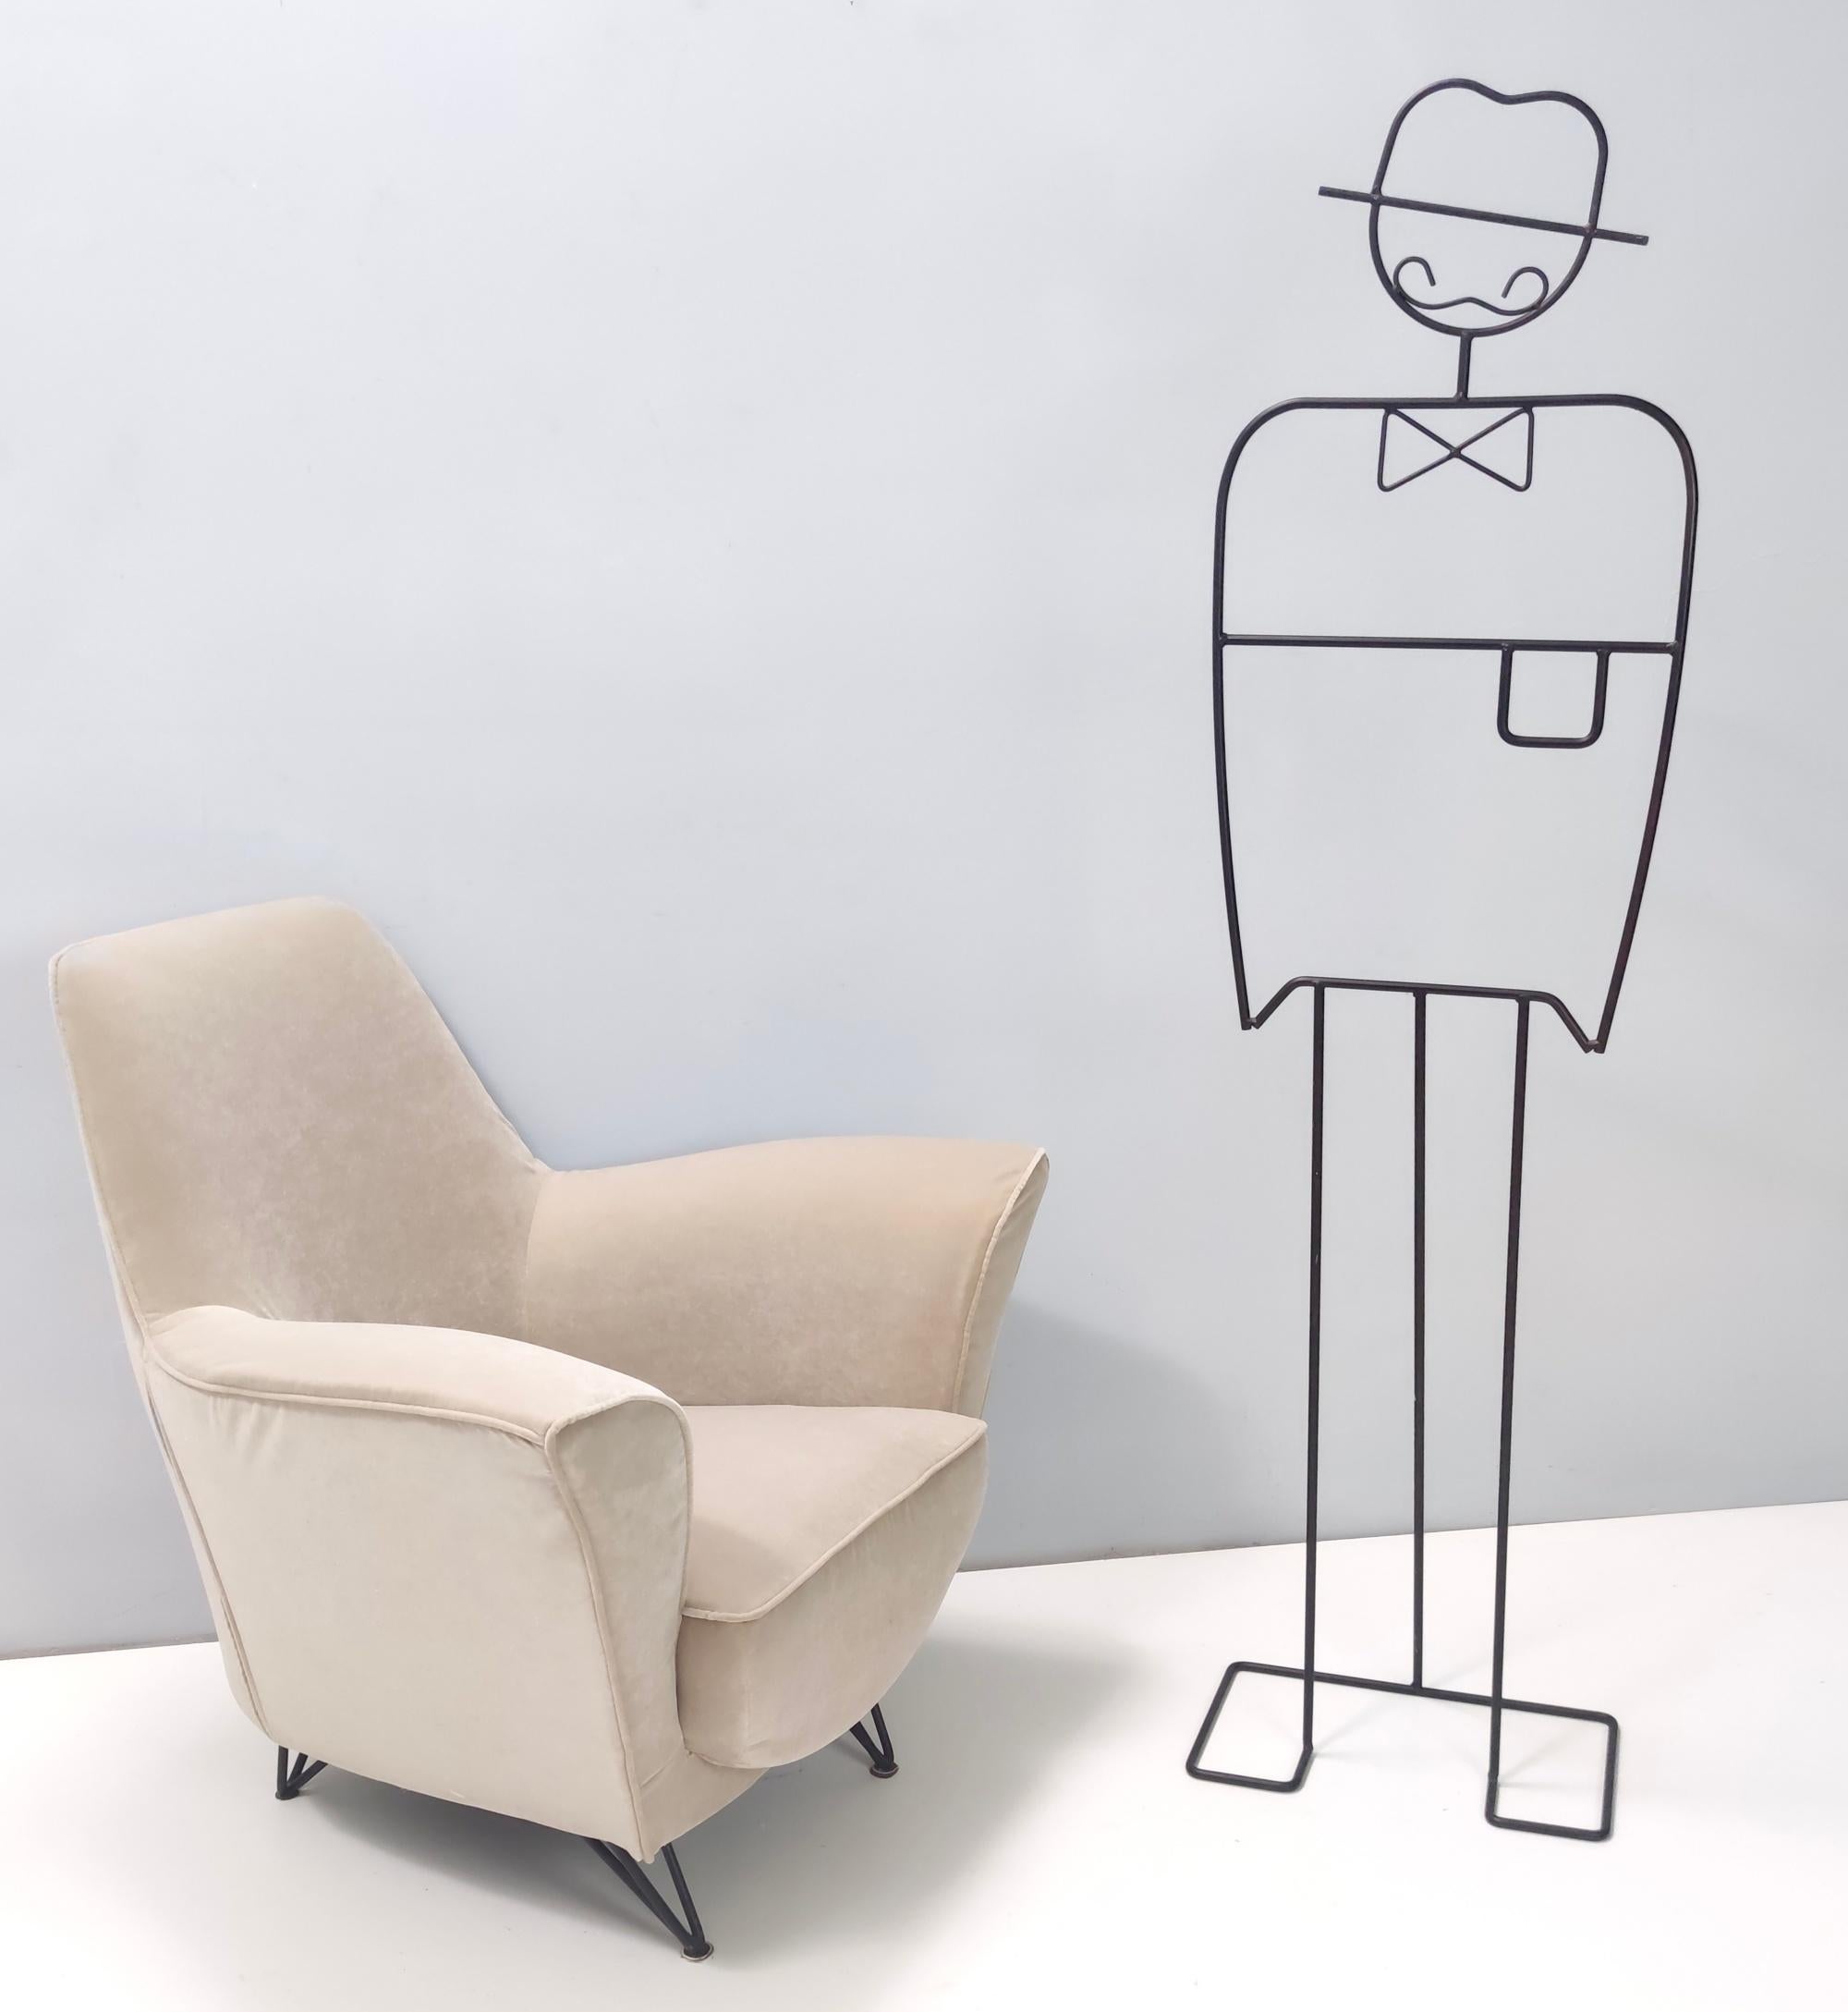 Fabriqué en Italie, années 1950. 
Ce fauteuil présente un nouveau revêtement en tissu beige et des pieds en métal verni. 
Ce siège est extrêmement confortable et accueillant.
Il est vintage et peut donc présenter de légères traces d'utilisation,